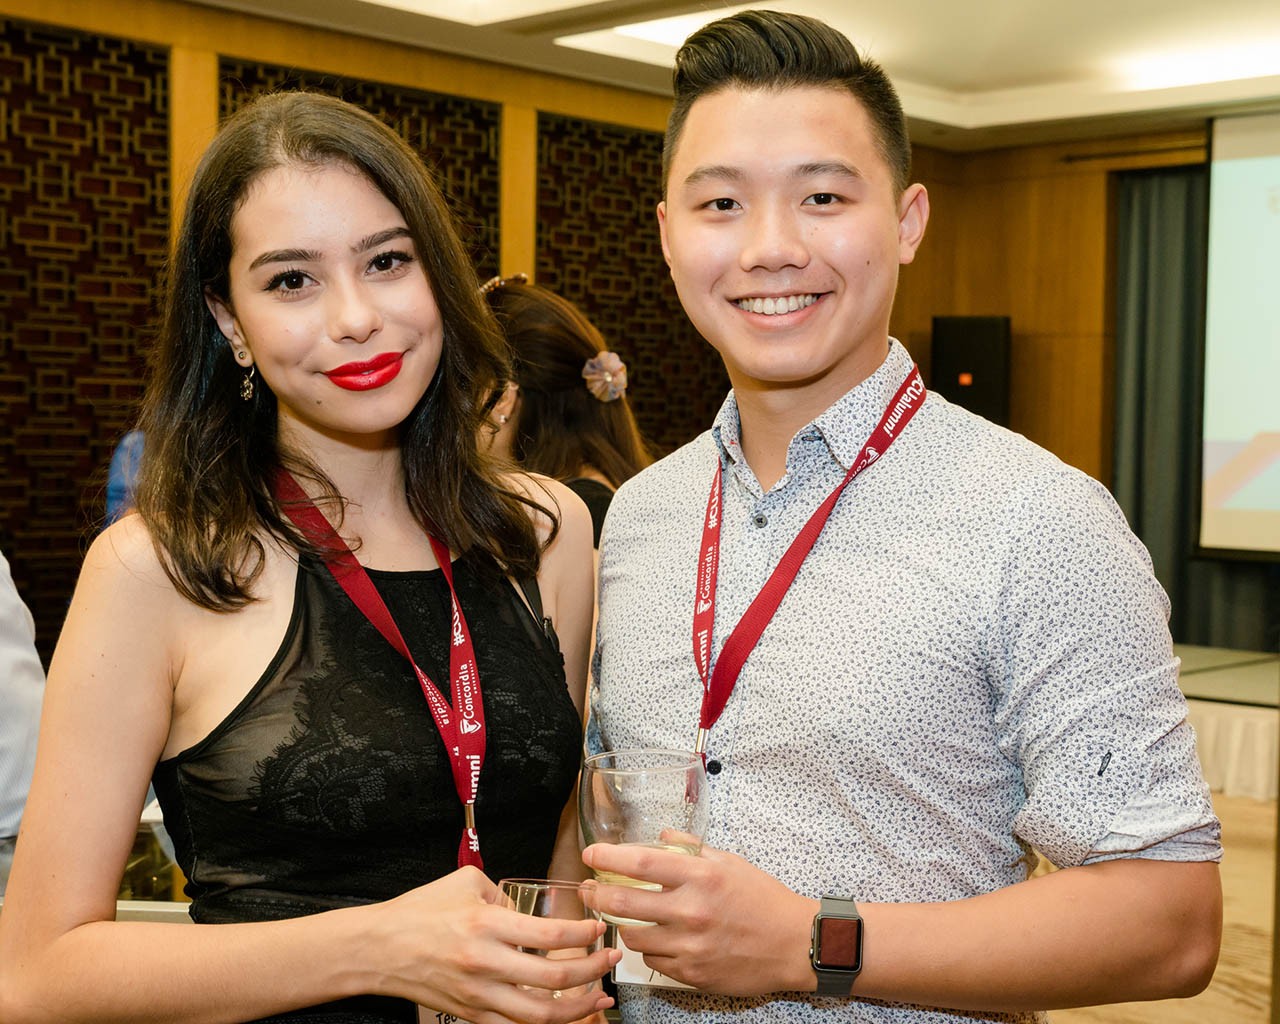 Beijing alumni reception - June 2017